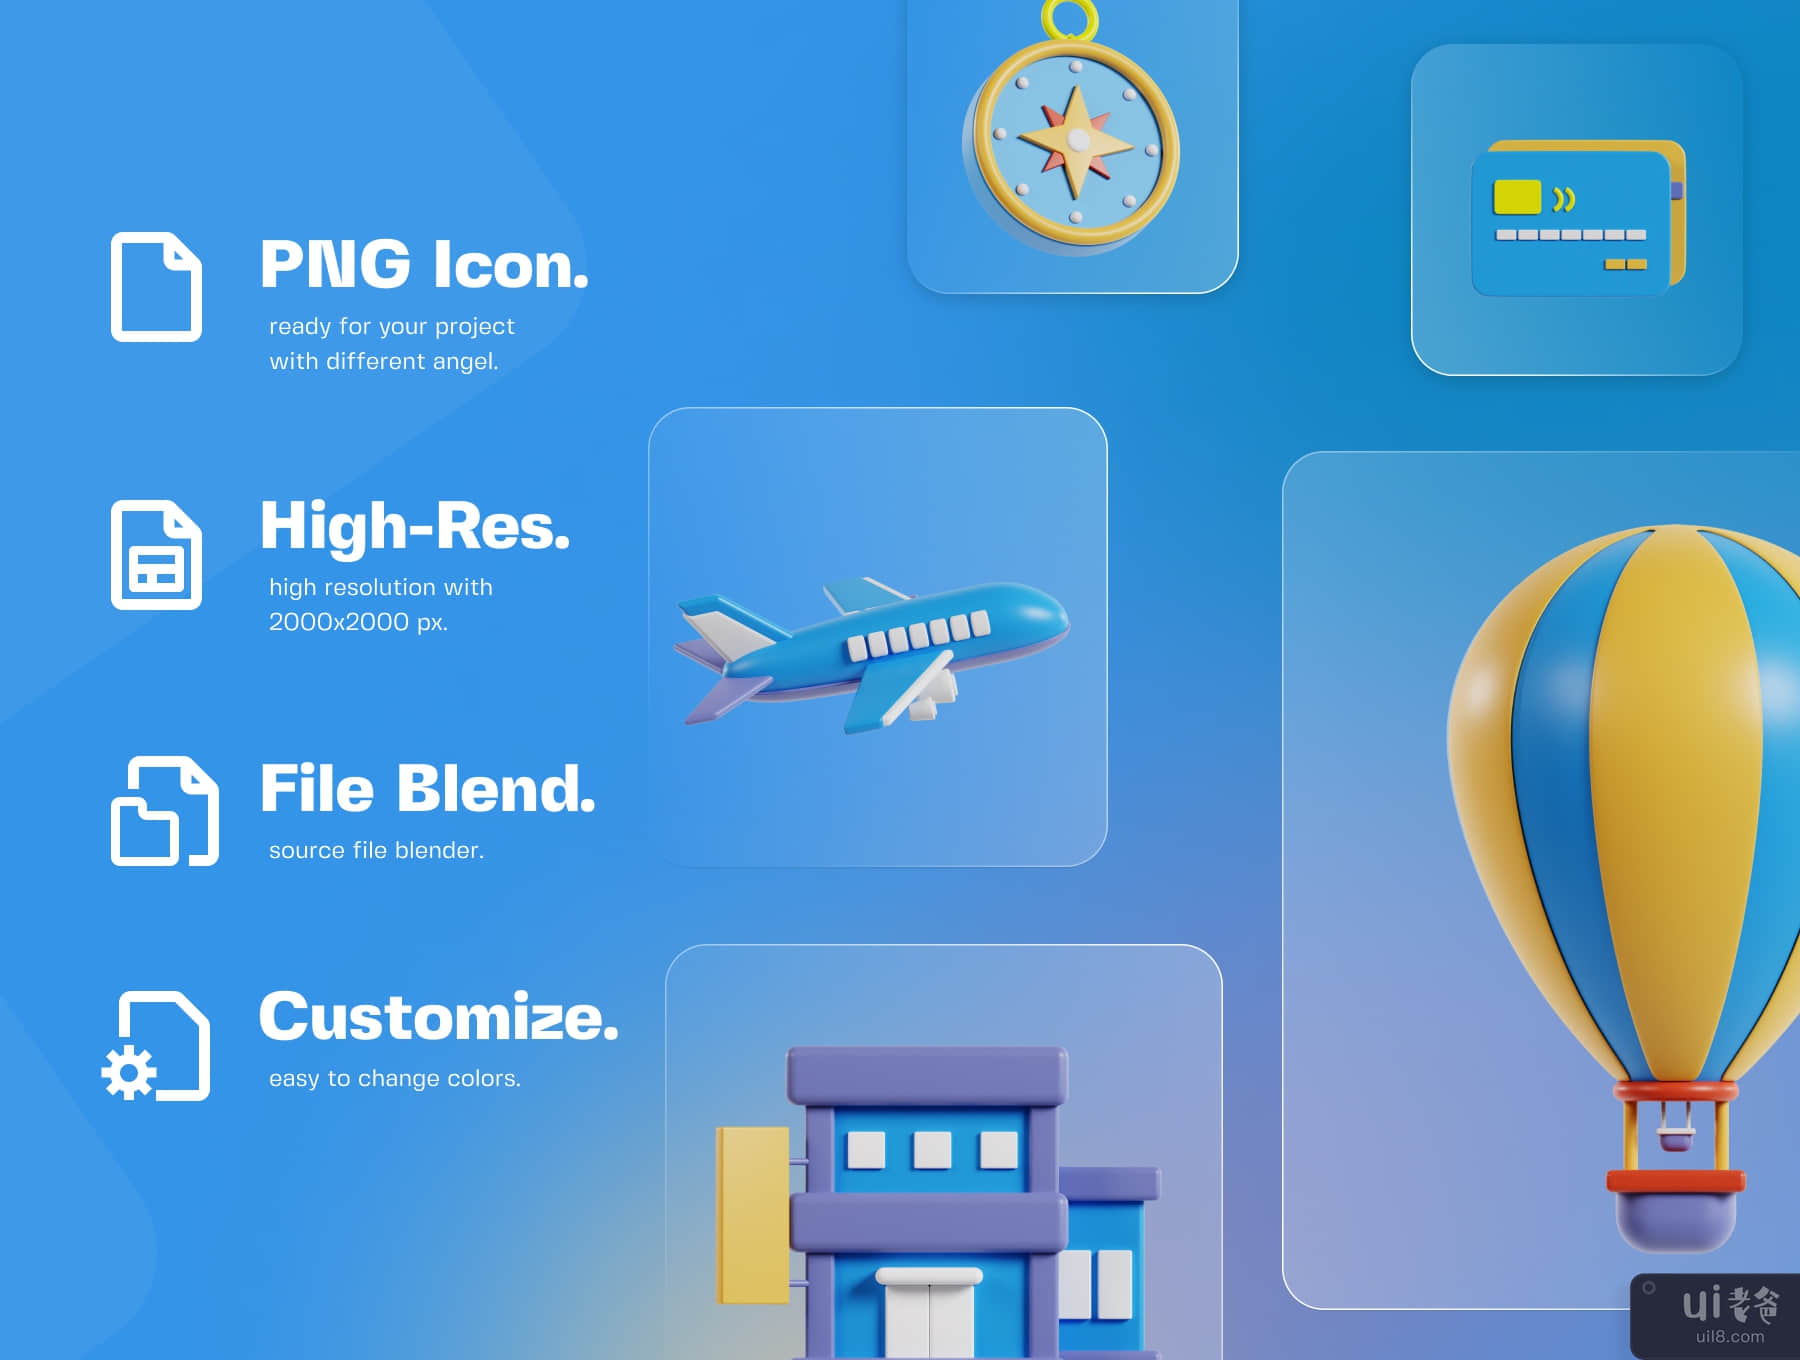 旅行和度假 3D 图标包 (Travel & Vacation 3D Icon Pack)插图4